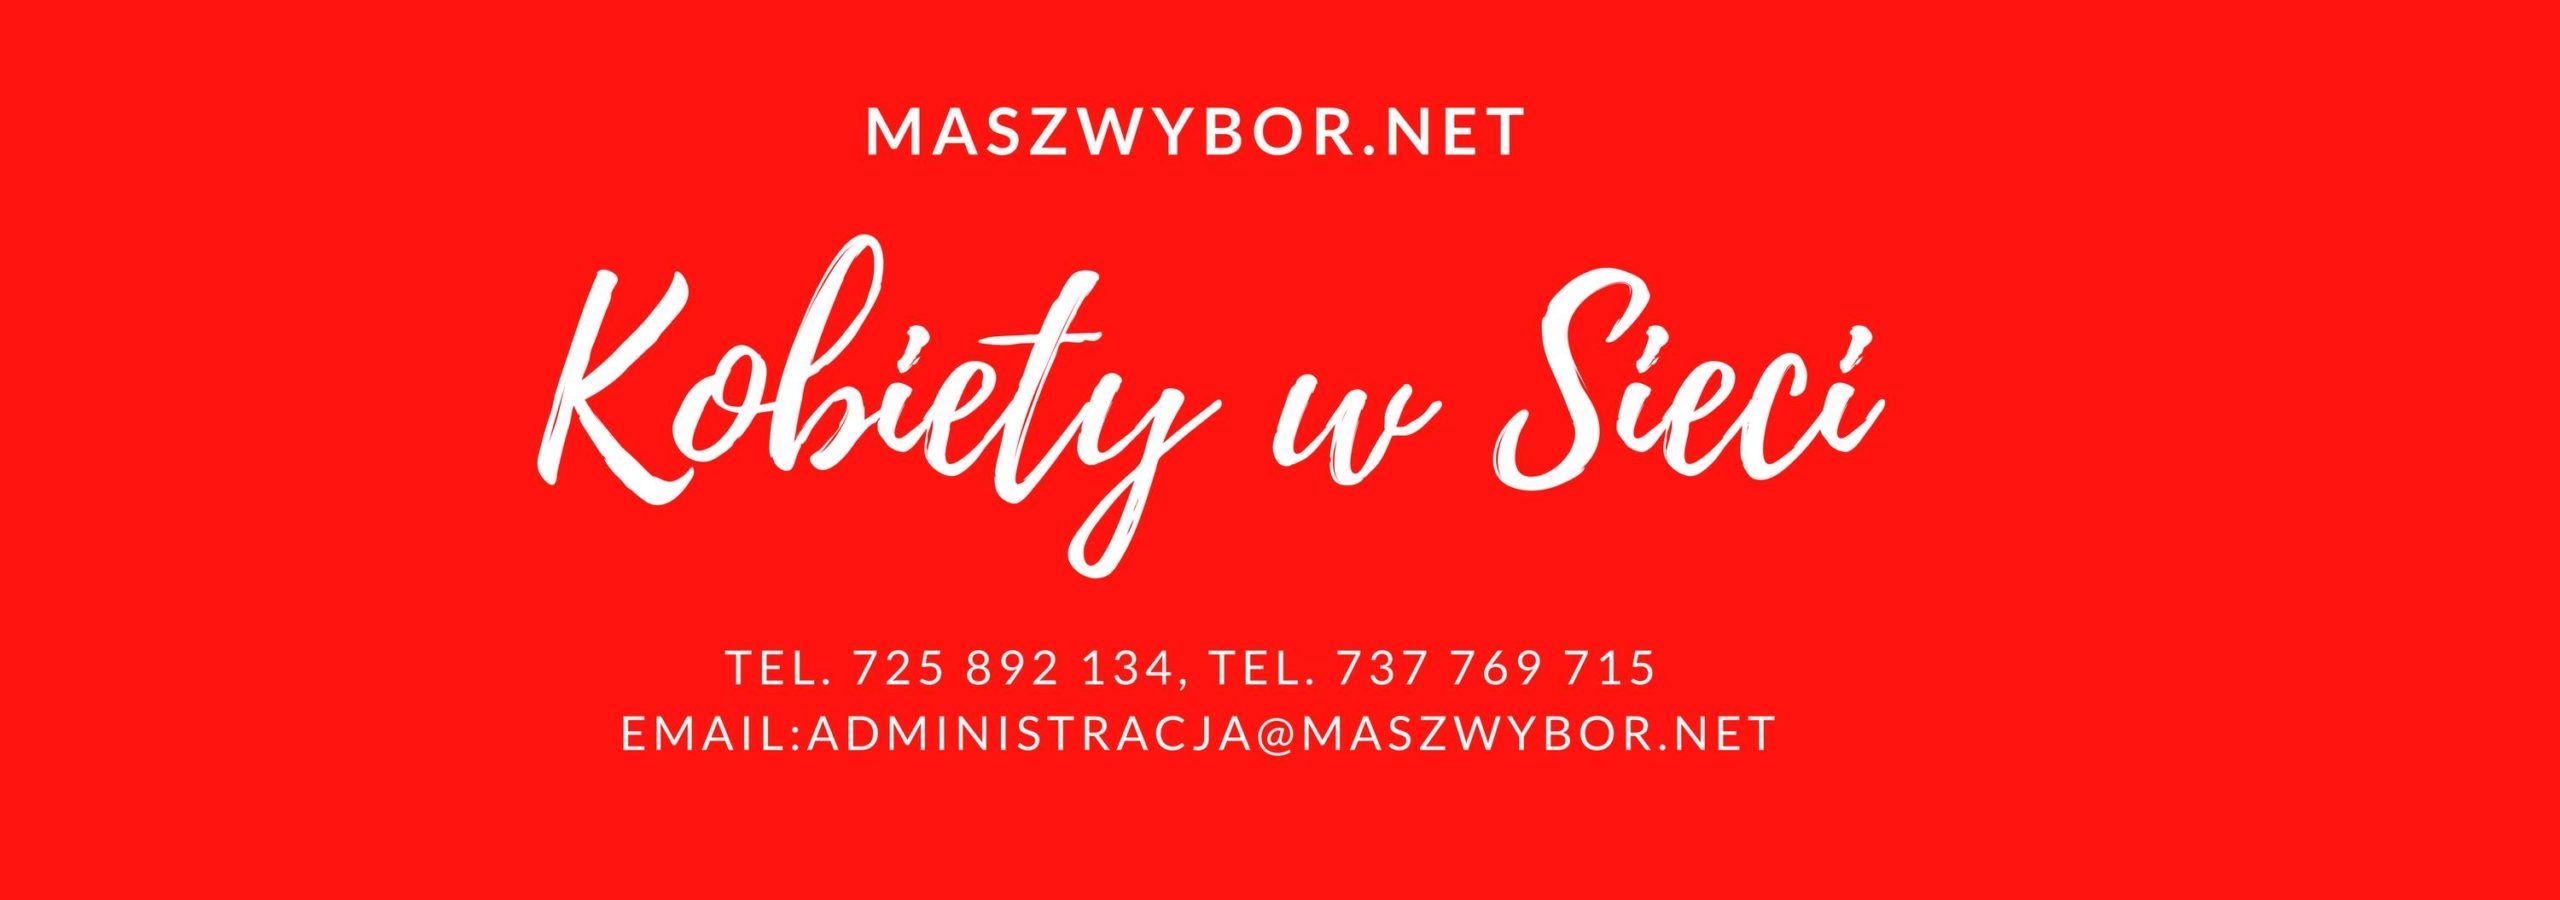 Women in Net (Poland) STATEMENT – Alert!